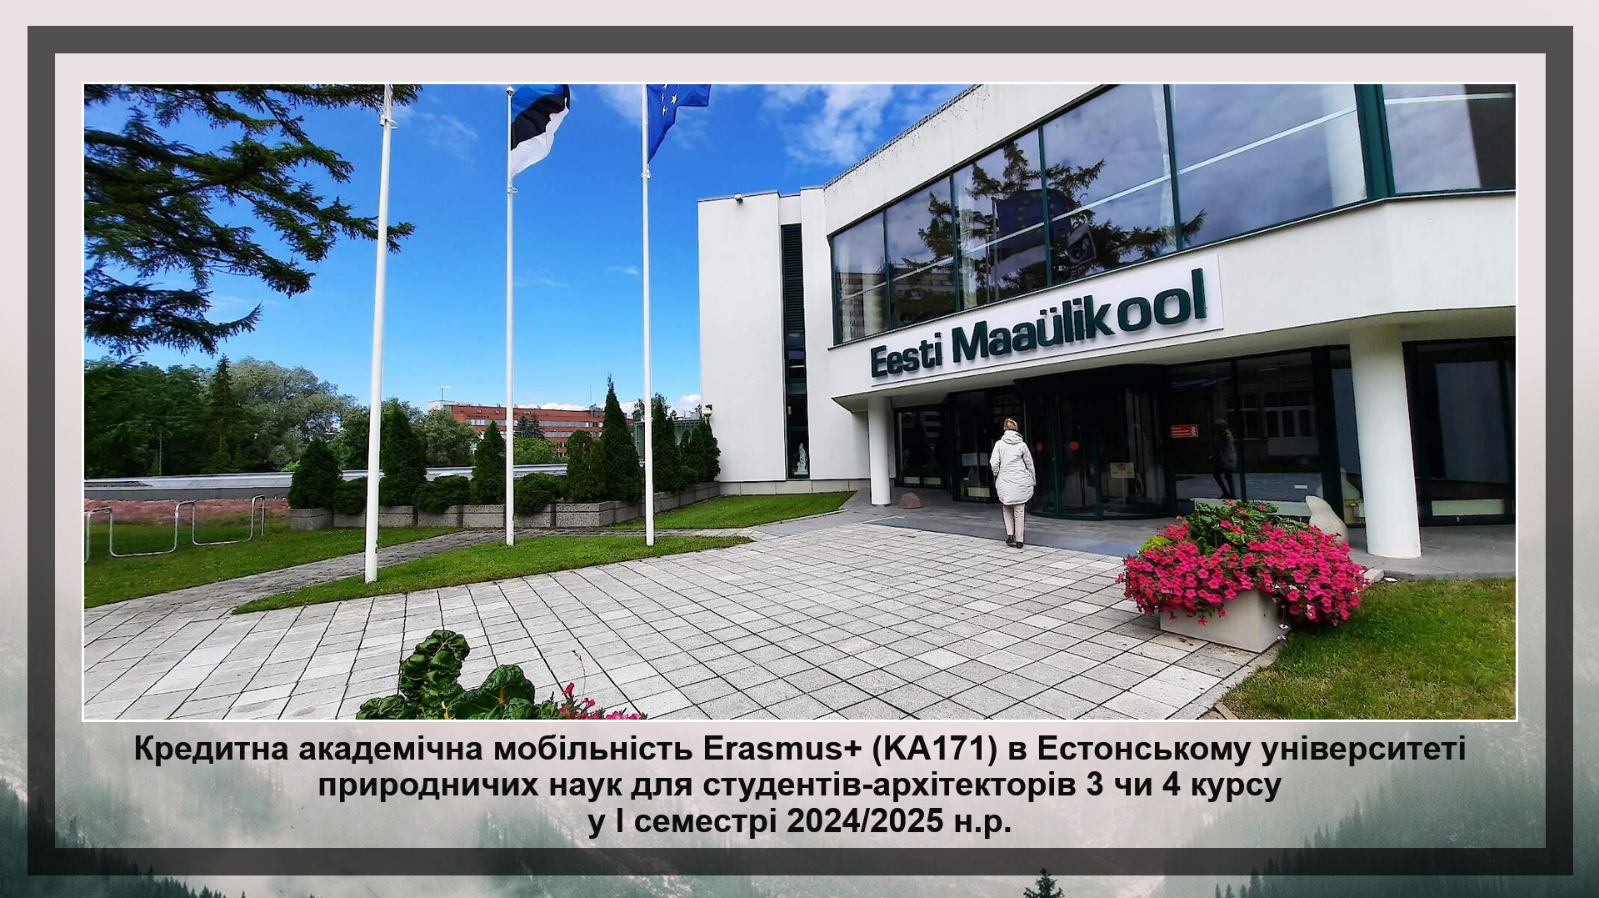 Естонський університет природничих наук запрошує майбутніх архітекторів вдосконалити компе...